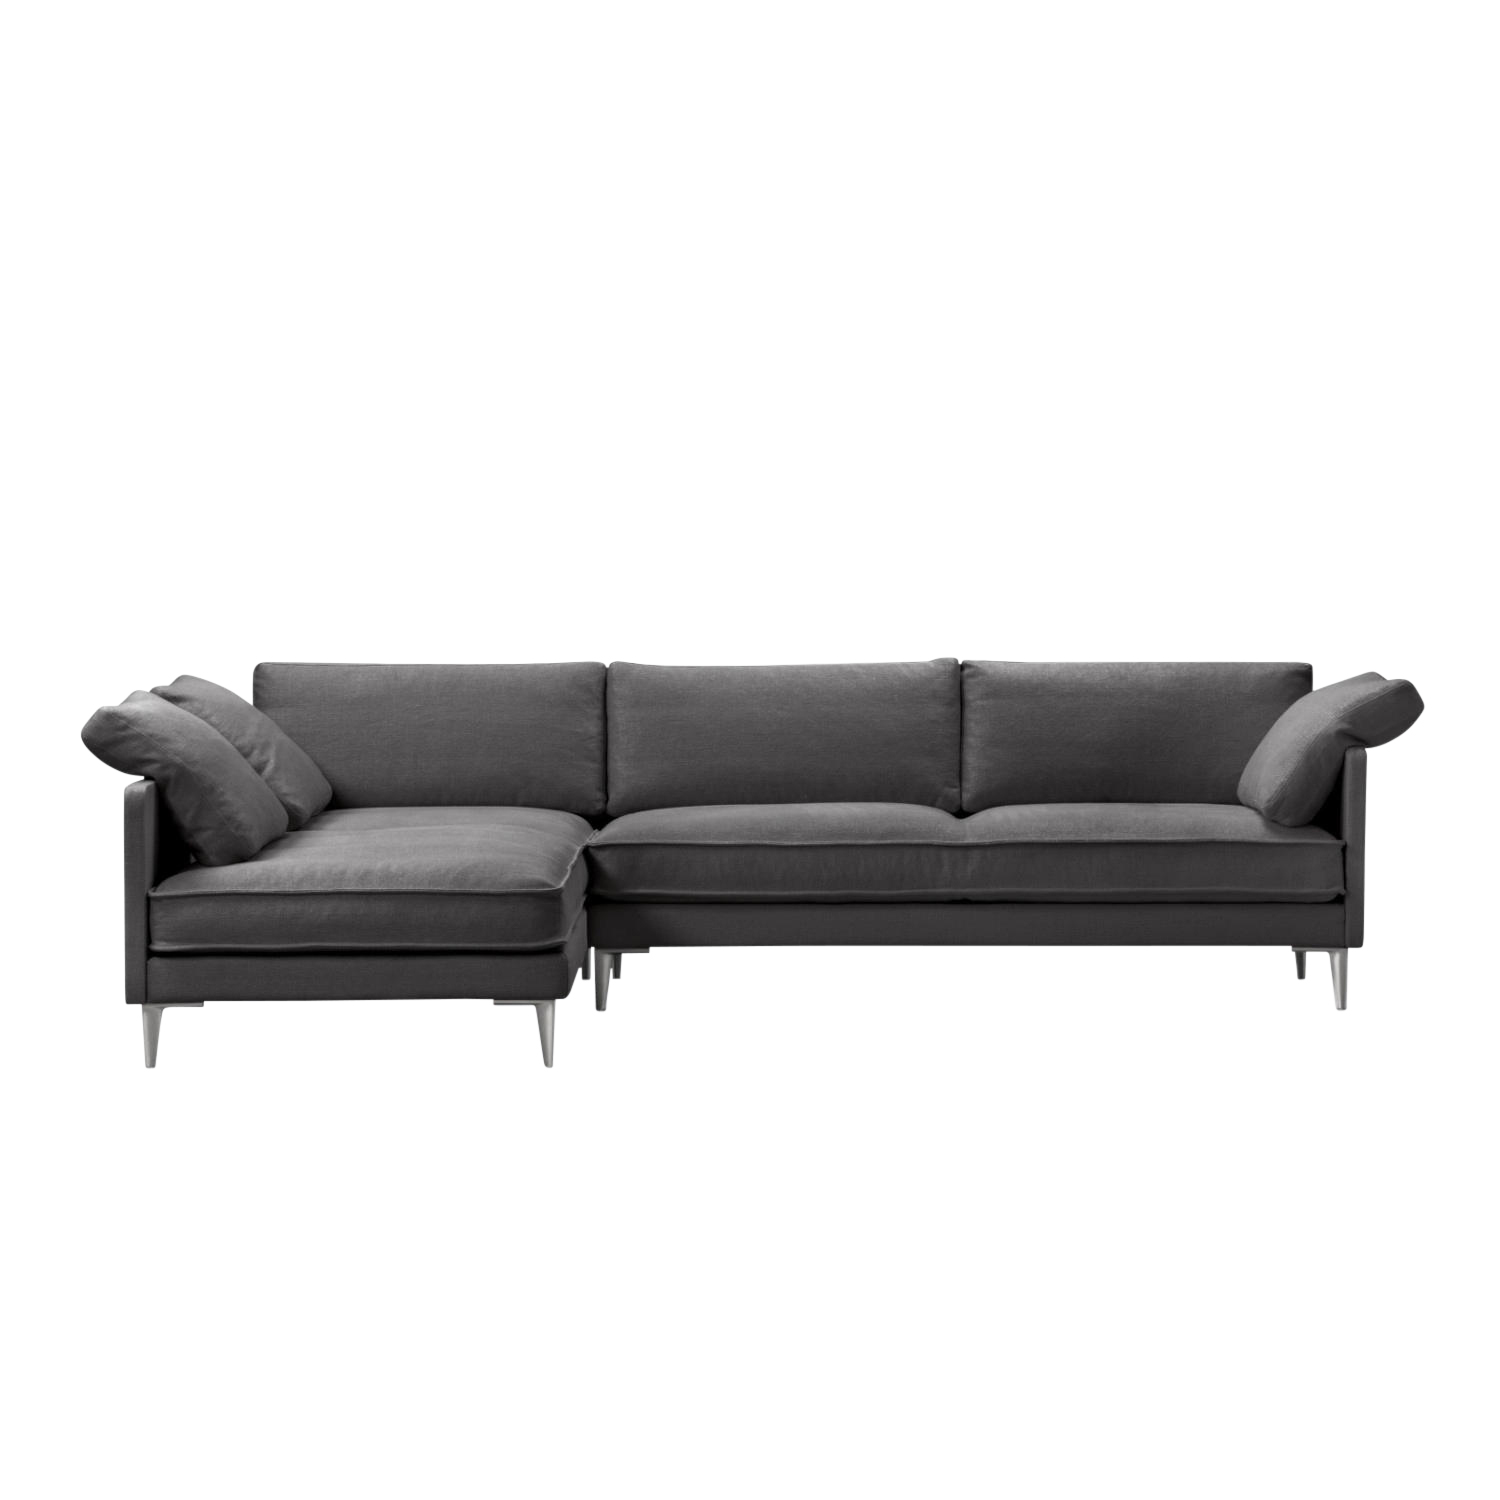 EJ295 Chaise 3er Stoff-Sofa, Bezug stoff remix3 - 196 black, Grösse b. 240 cm, Chaiselounge rechts (vor dem sofa stehend), Beine chrome von Fredericia